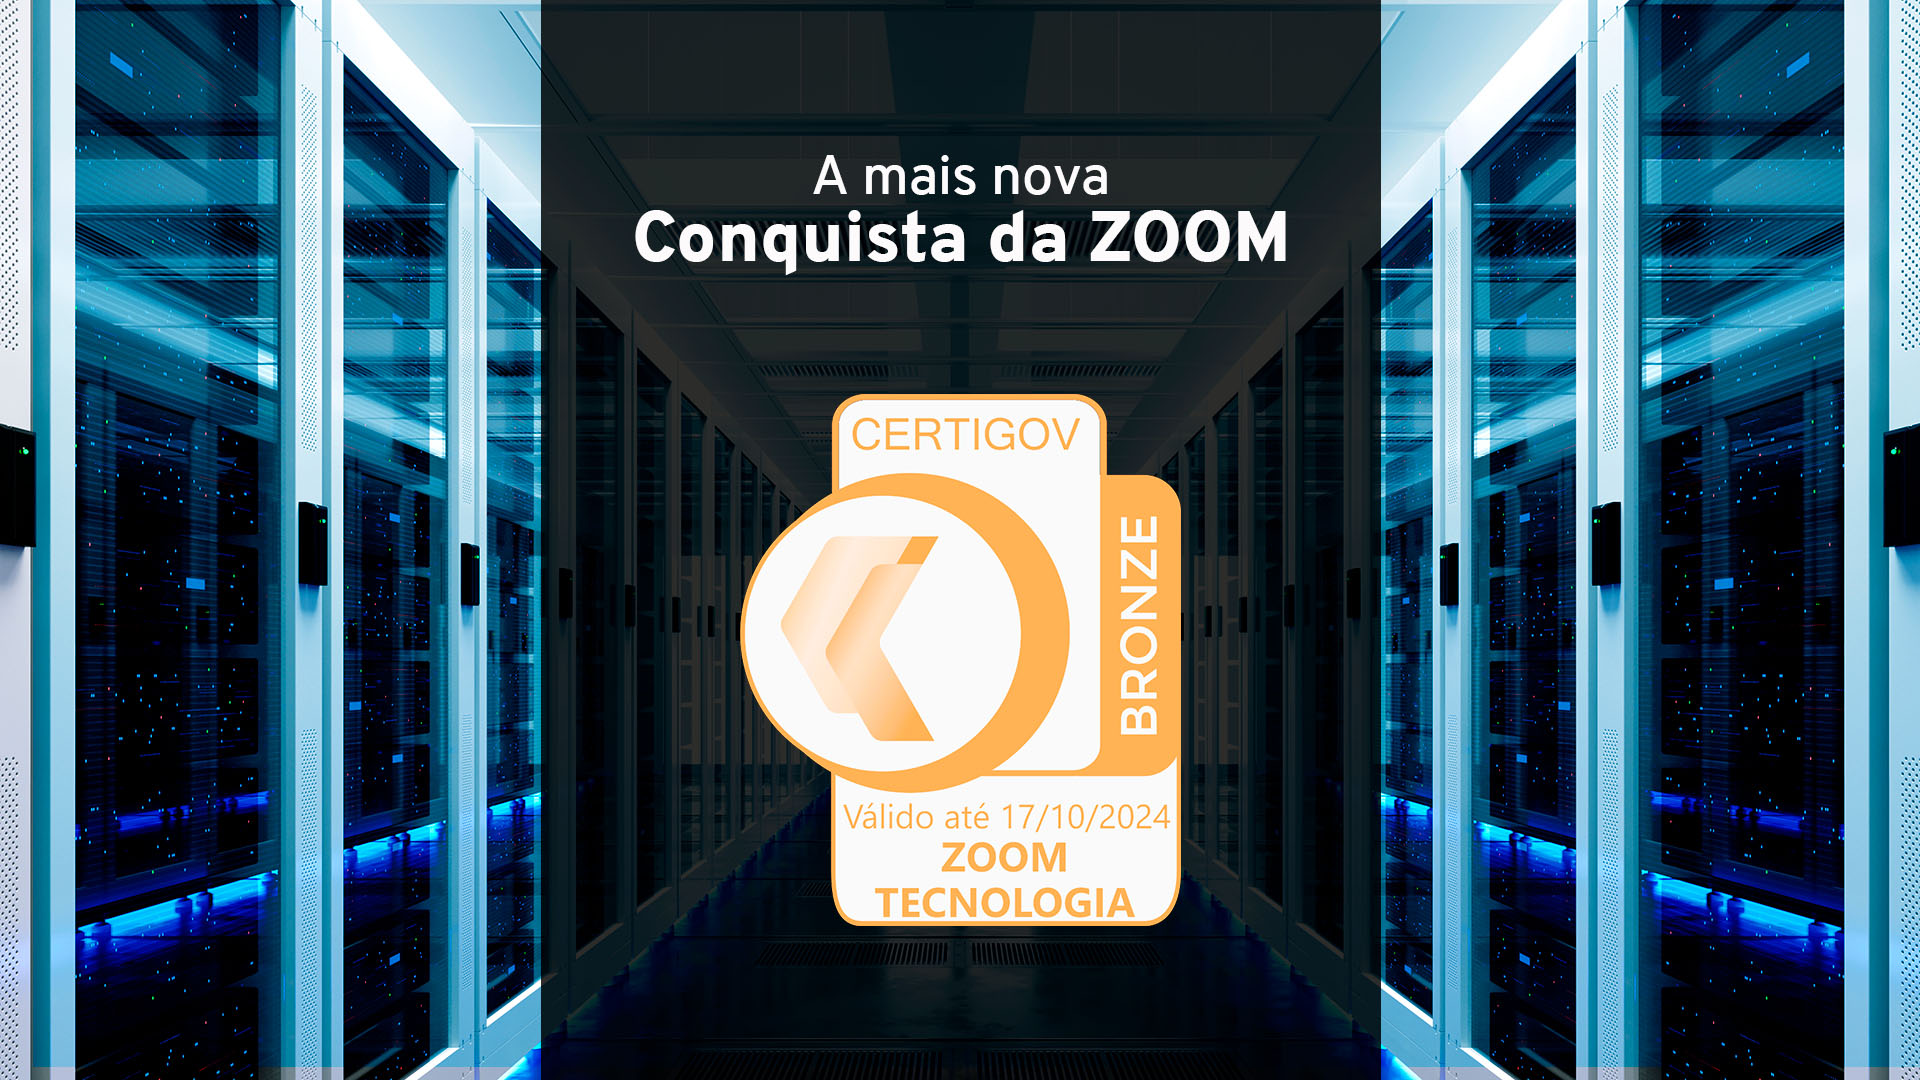 ZOOMtecnologia conquista a certificação CertiGov